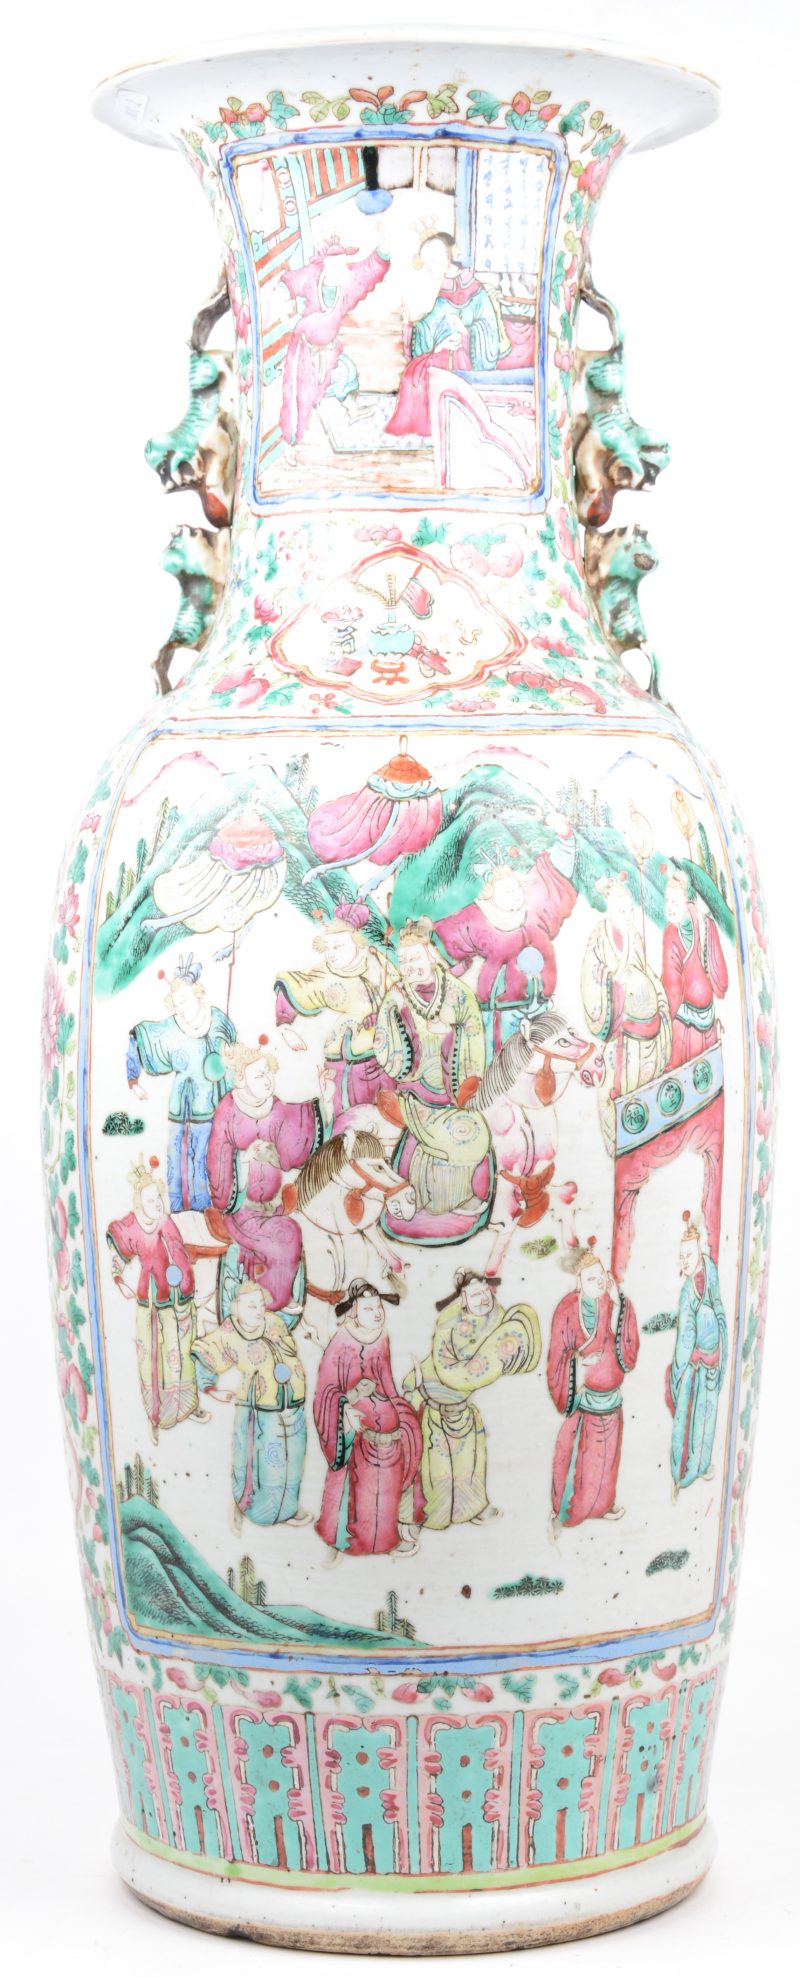 Een vaas van Cantonporselein met scènes van de hofhouding in cartouches op een achtergrond van pioenen en perziken. De handvatten in de vorm van twee aapjes met een bal. Omstreeks 1900.